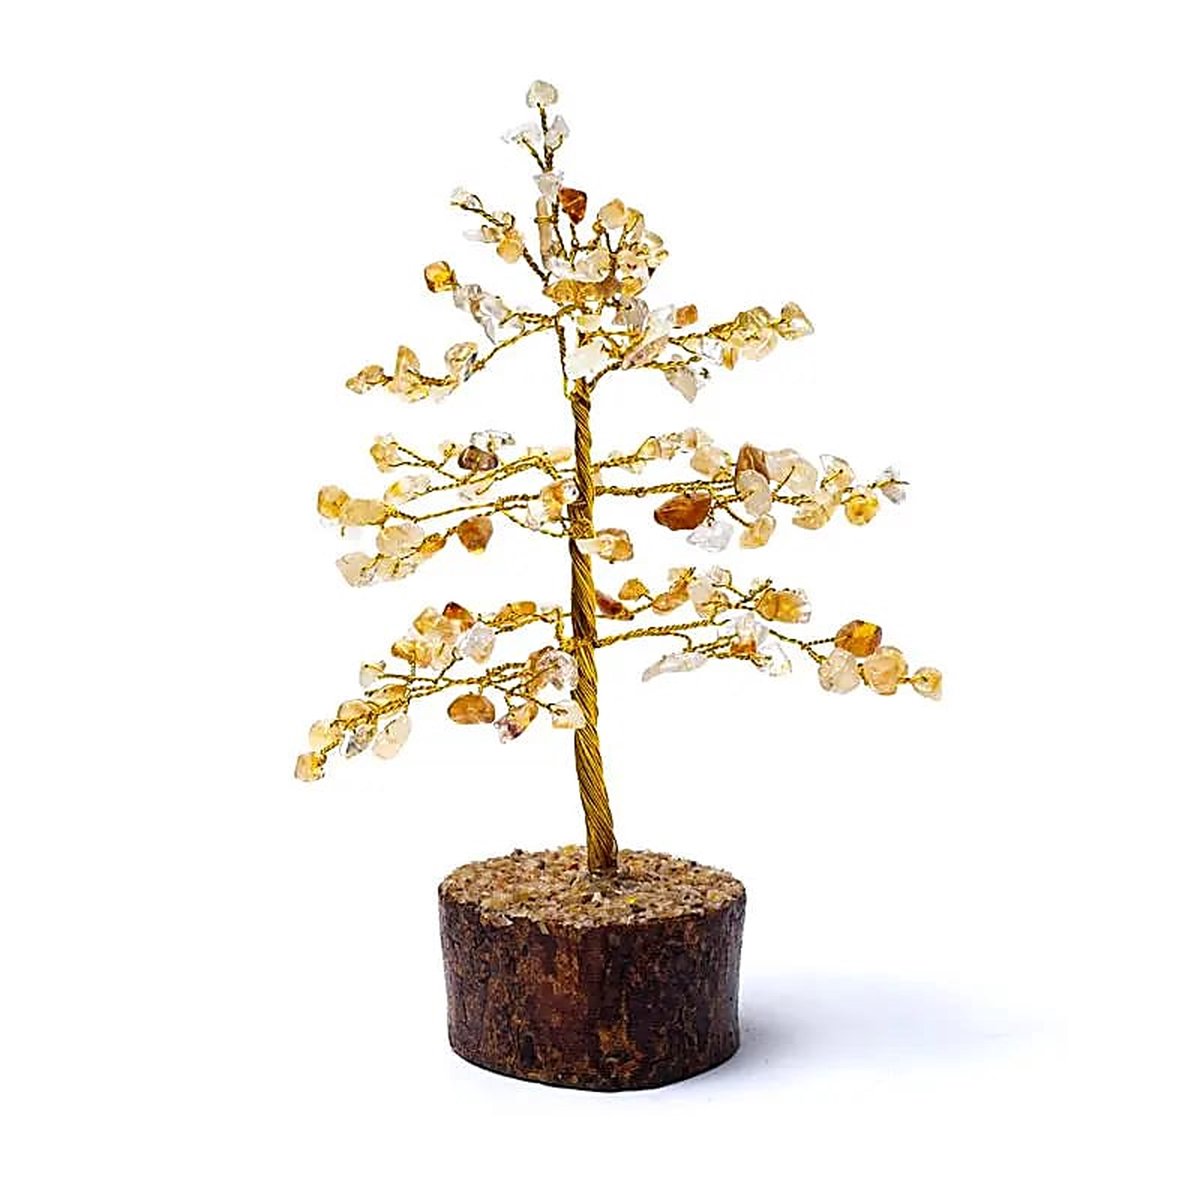 Edelsteenboom - Citrien - Geel - Oranjebruin - Zonnevlecht - 3e Chakra - ong. 18 cm